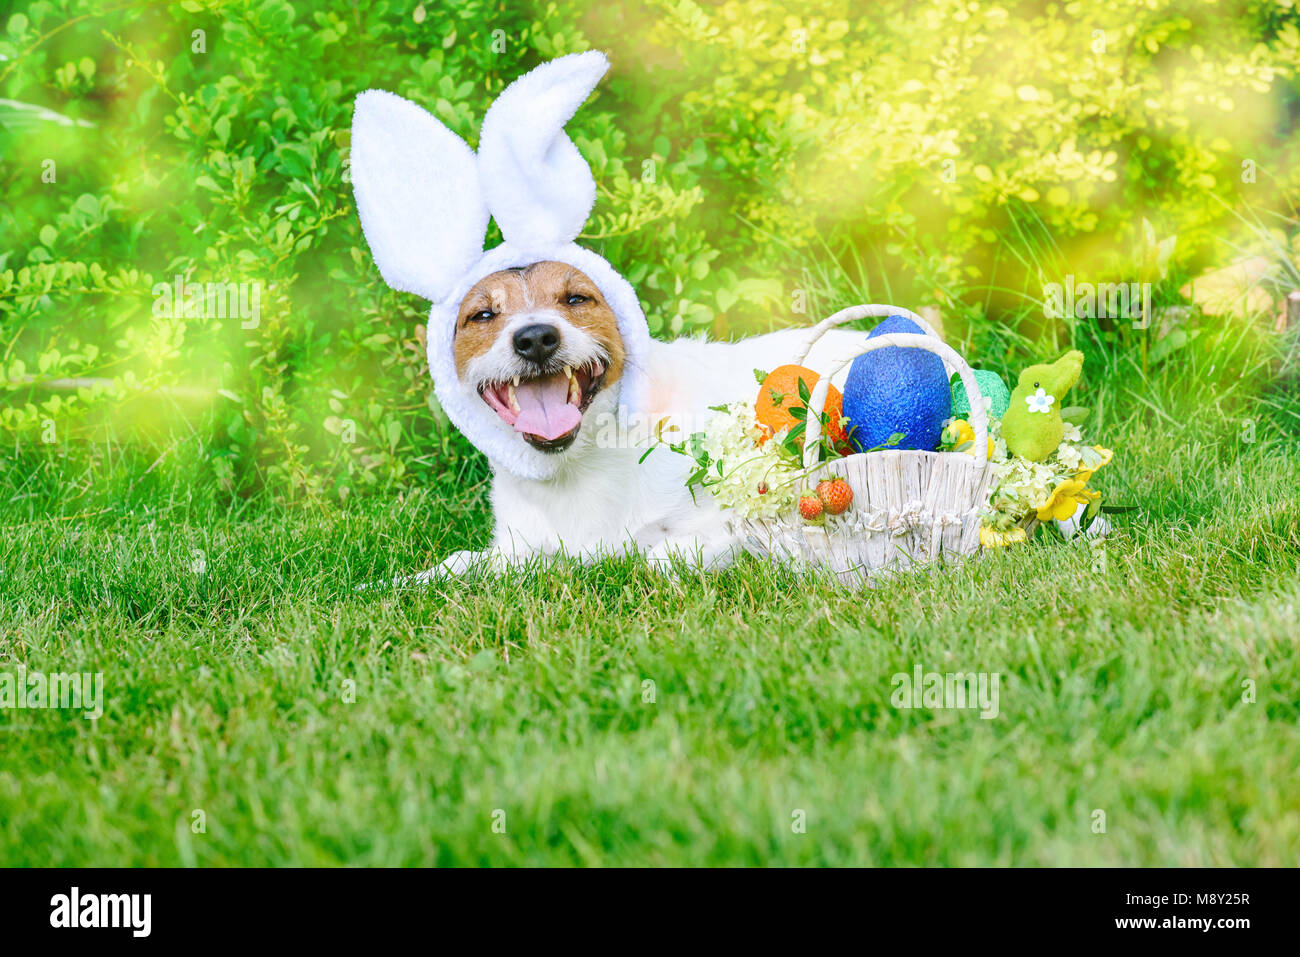 Liegend auf Gras Hund als happy Bunny bereit für Ostern (Pascha) Parade  Stockfotografie - Alamy